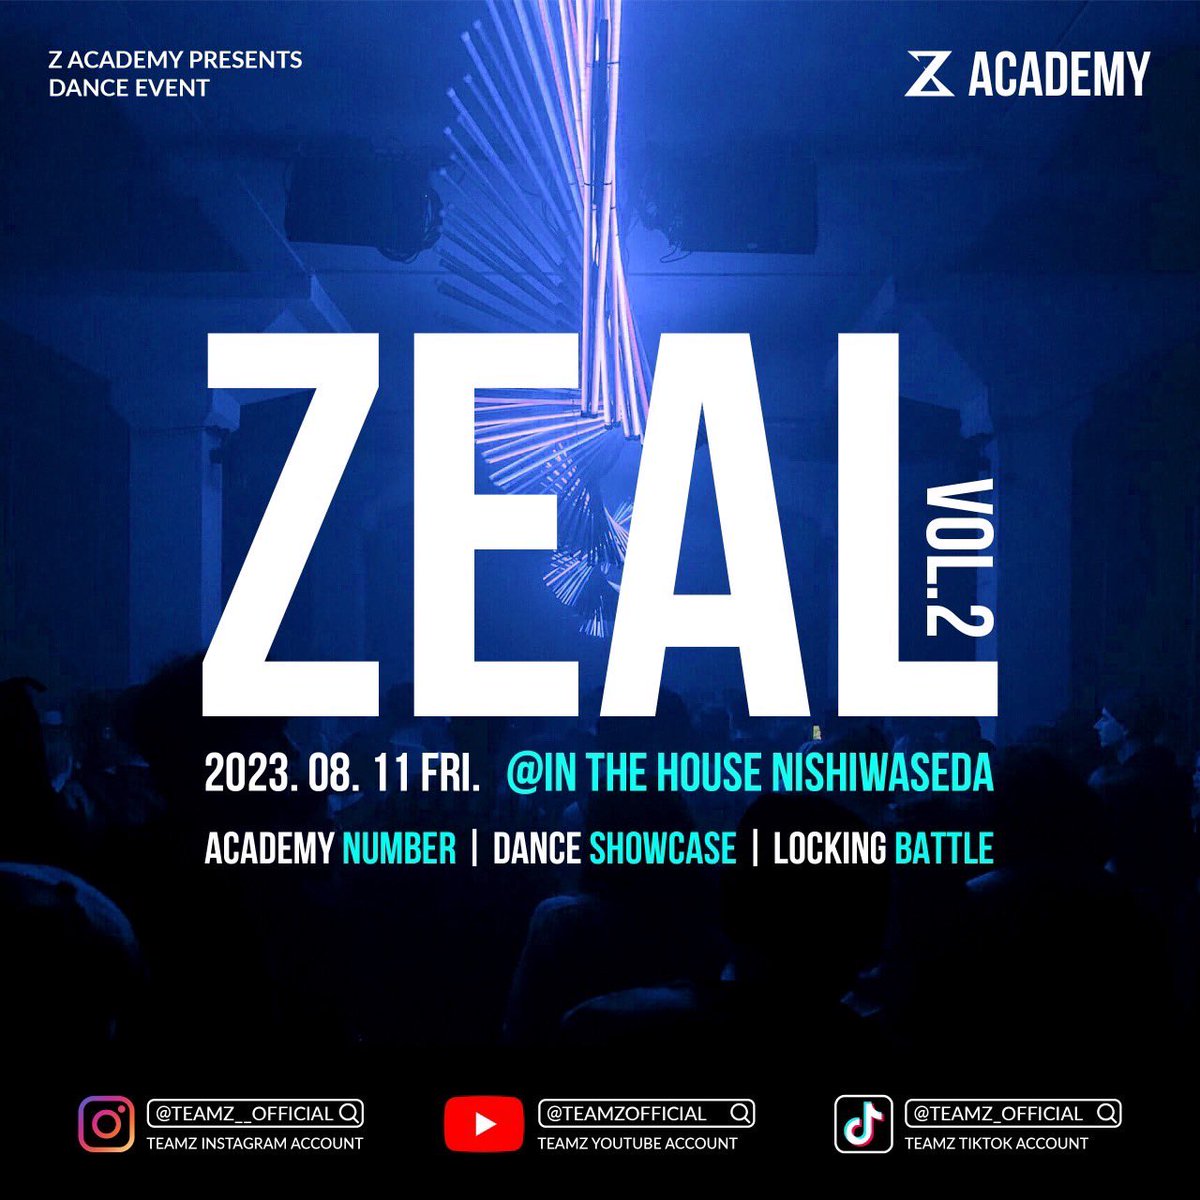 いよいよ来週金曜日の8/11(金)に開催される【ZEAL VOL.2】❗️ イベント内容はゲストショーケース、アカデミーナンバー、ショーケース、バトル、DJ TIME など盛り沢山の内容になっています。 詳しくは'TEAMZ'のインスタアカウントをチェック✅ instagram.com/teamz_zin?igsh…